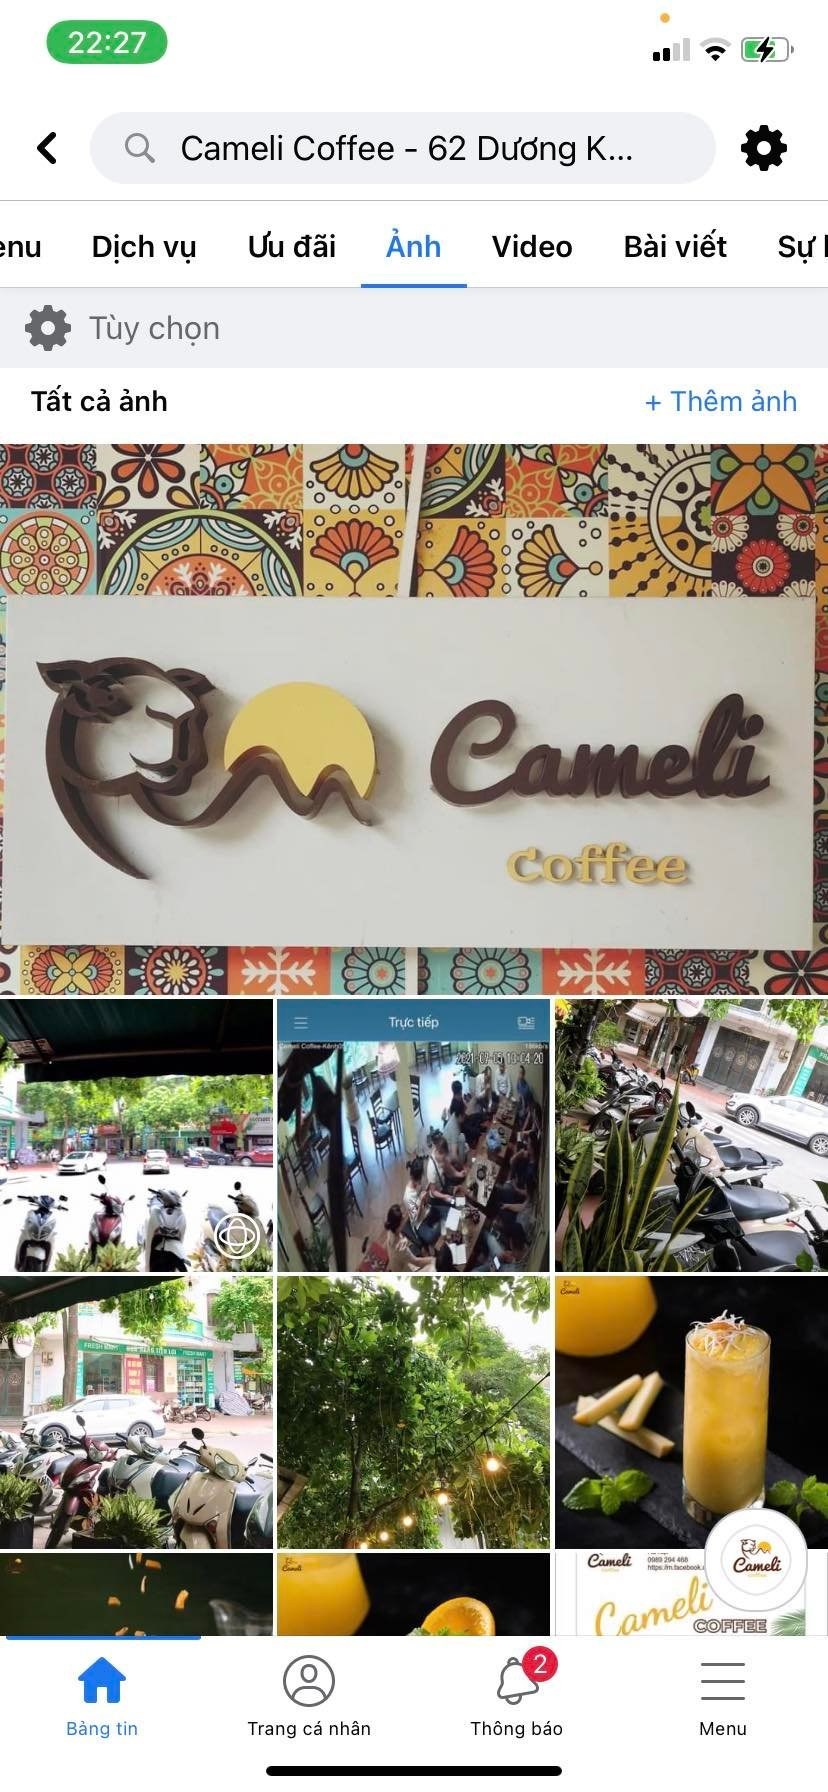 CẦN SANG NHƯỢNG GẤP QUÁN CAMELI COFFEE 2 TẦNG VIEW ĐẸP tại 62 Dương